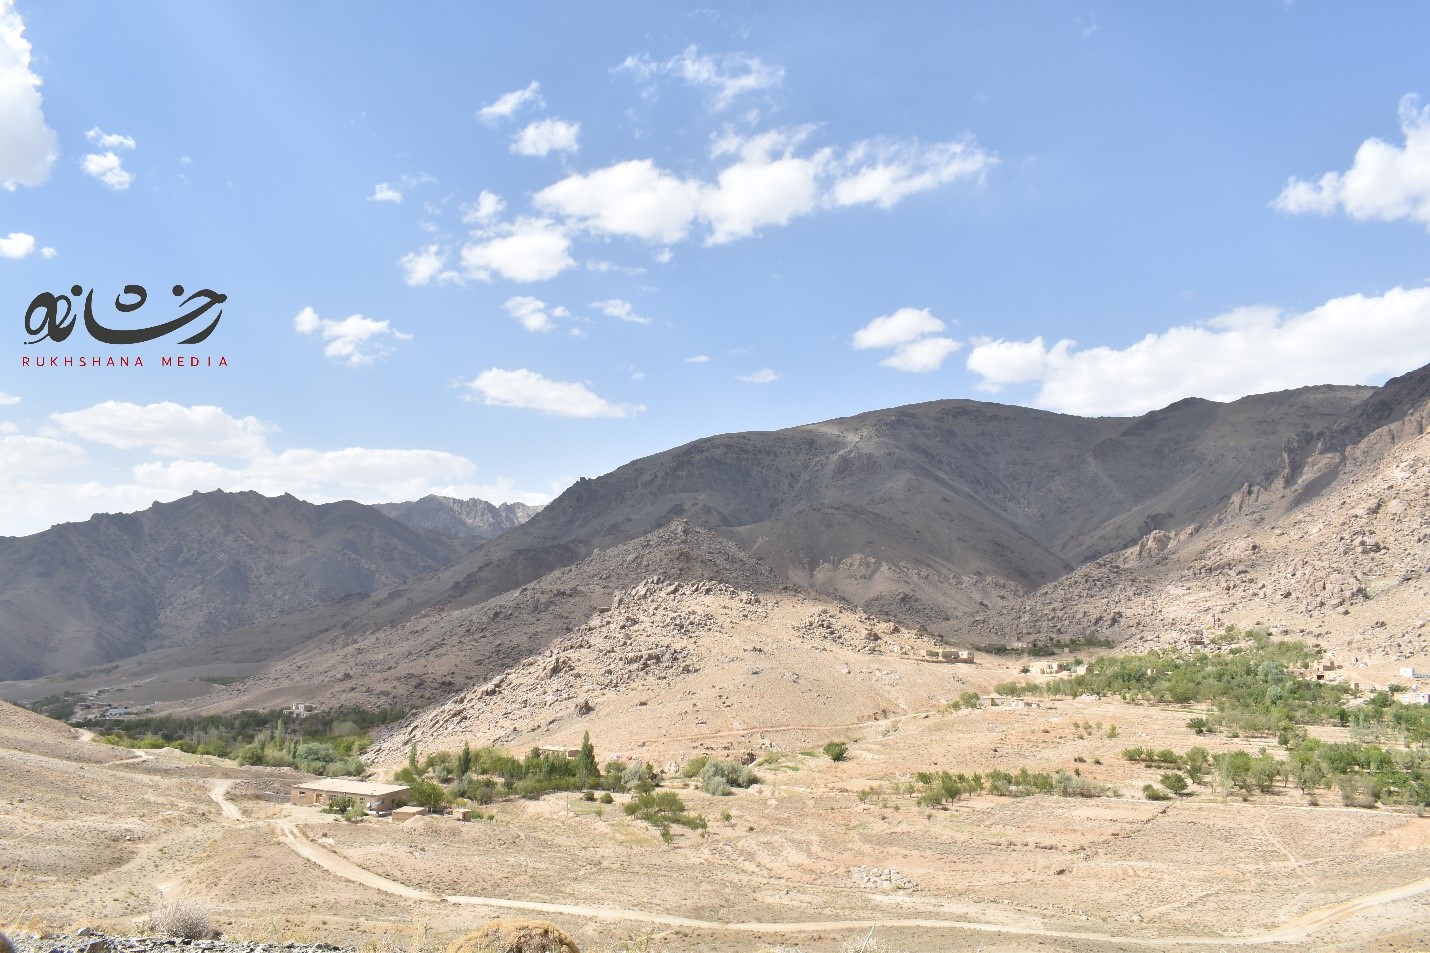 نمایی از روستای قرقول بالا در ولسوالی جاغوری. عکس: رسانه رخشانه